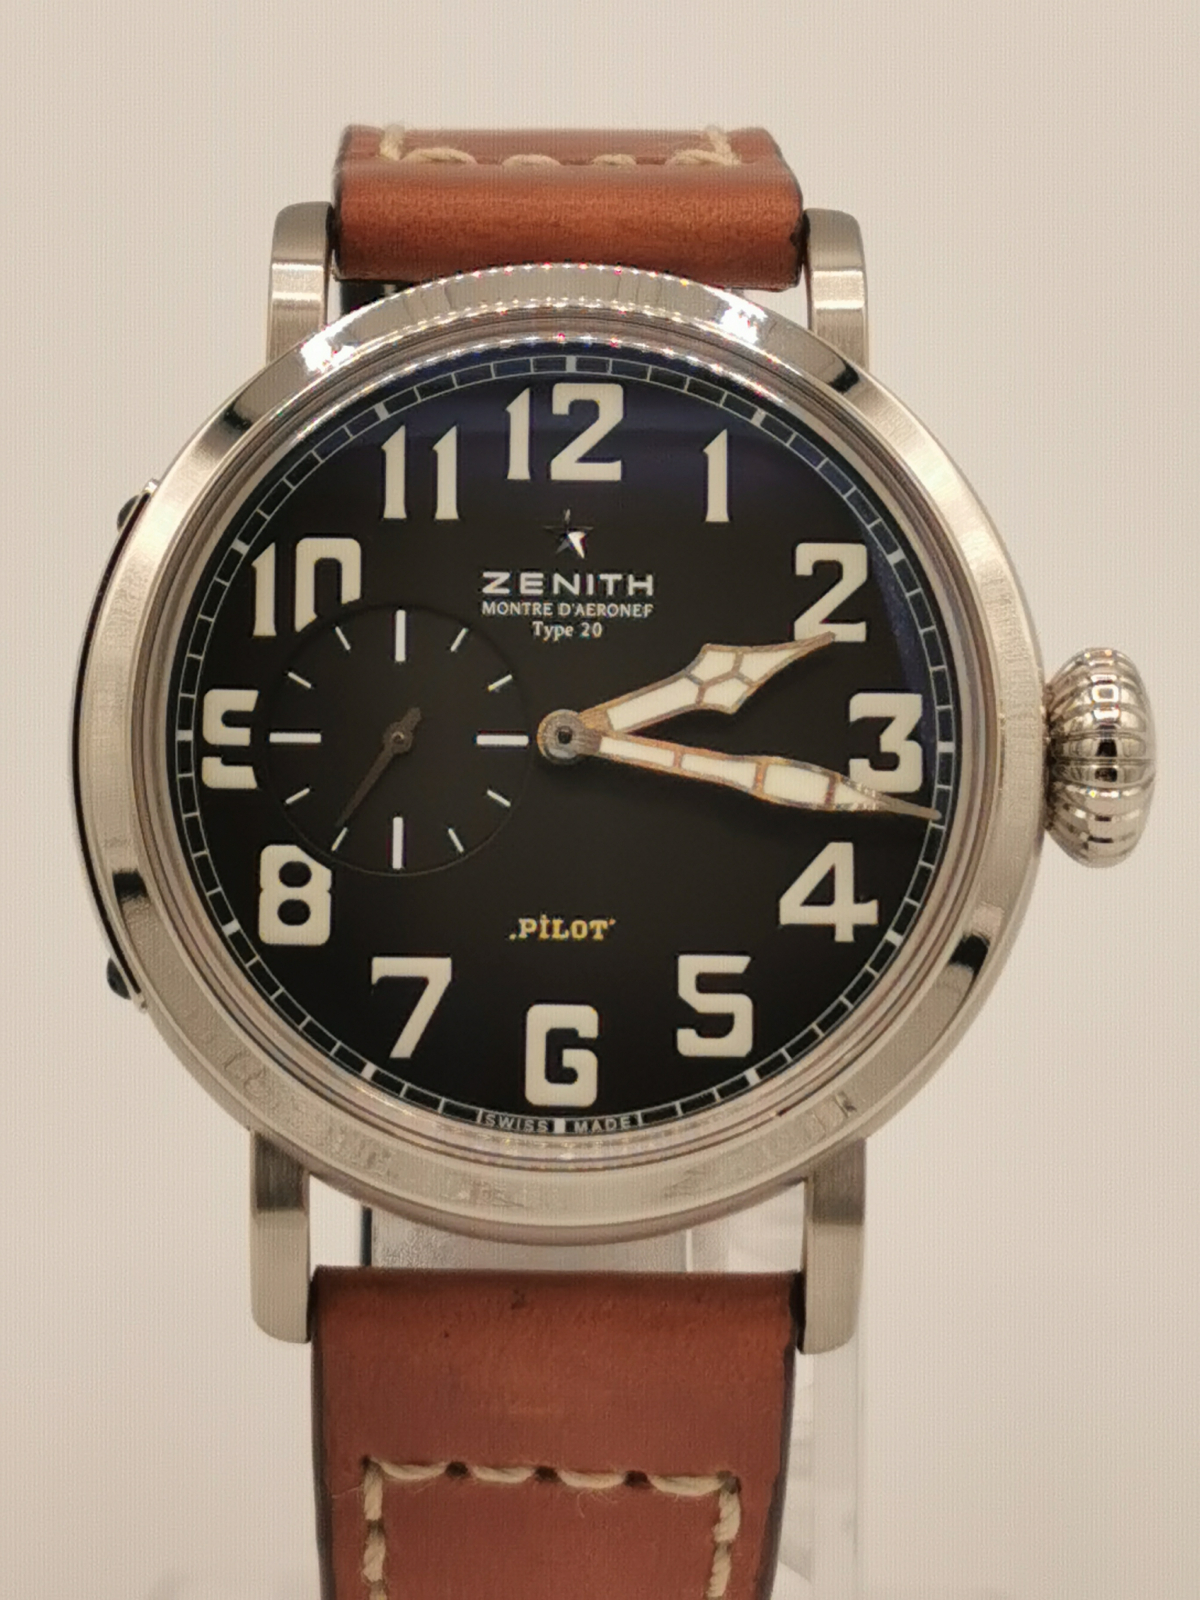 ゼニス (ZENITH) パイロット アエロネフ タイプ20 40mm - トケナビ - 手数料無料の時計専門マーケットプレイス  ロレックス、オメガ等ブランド時計